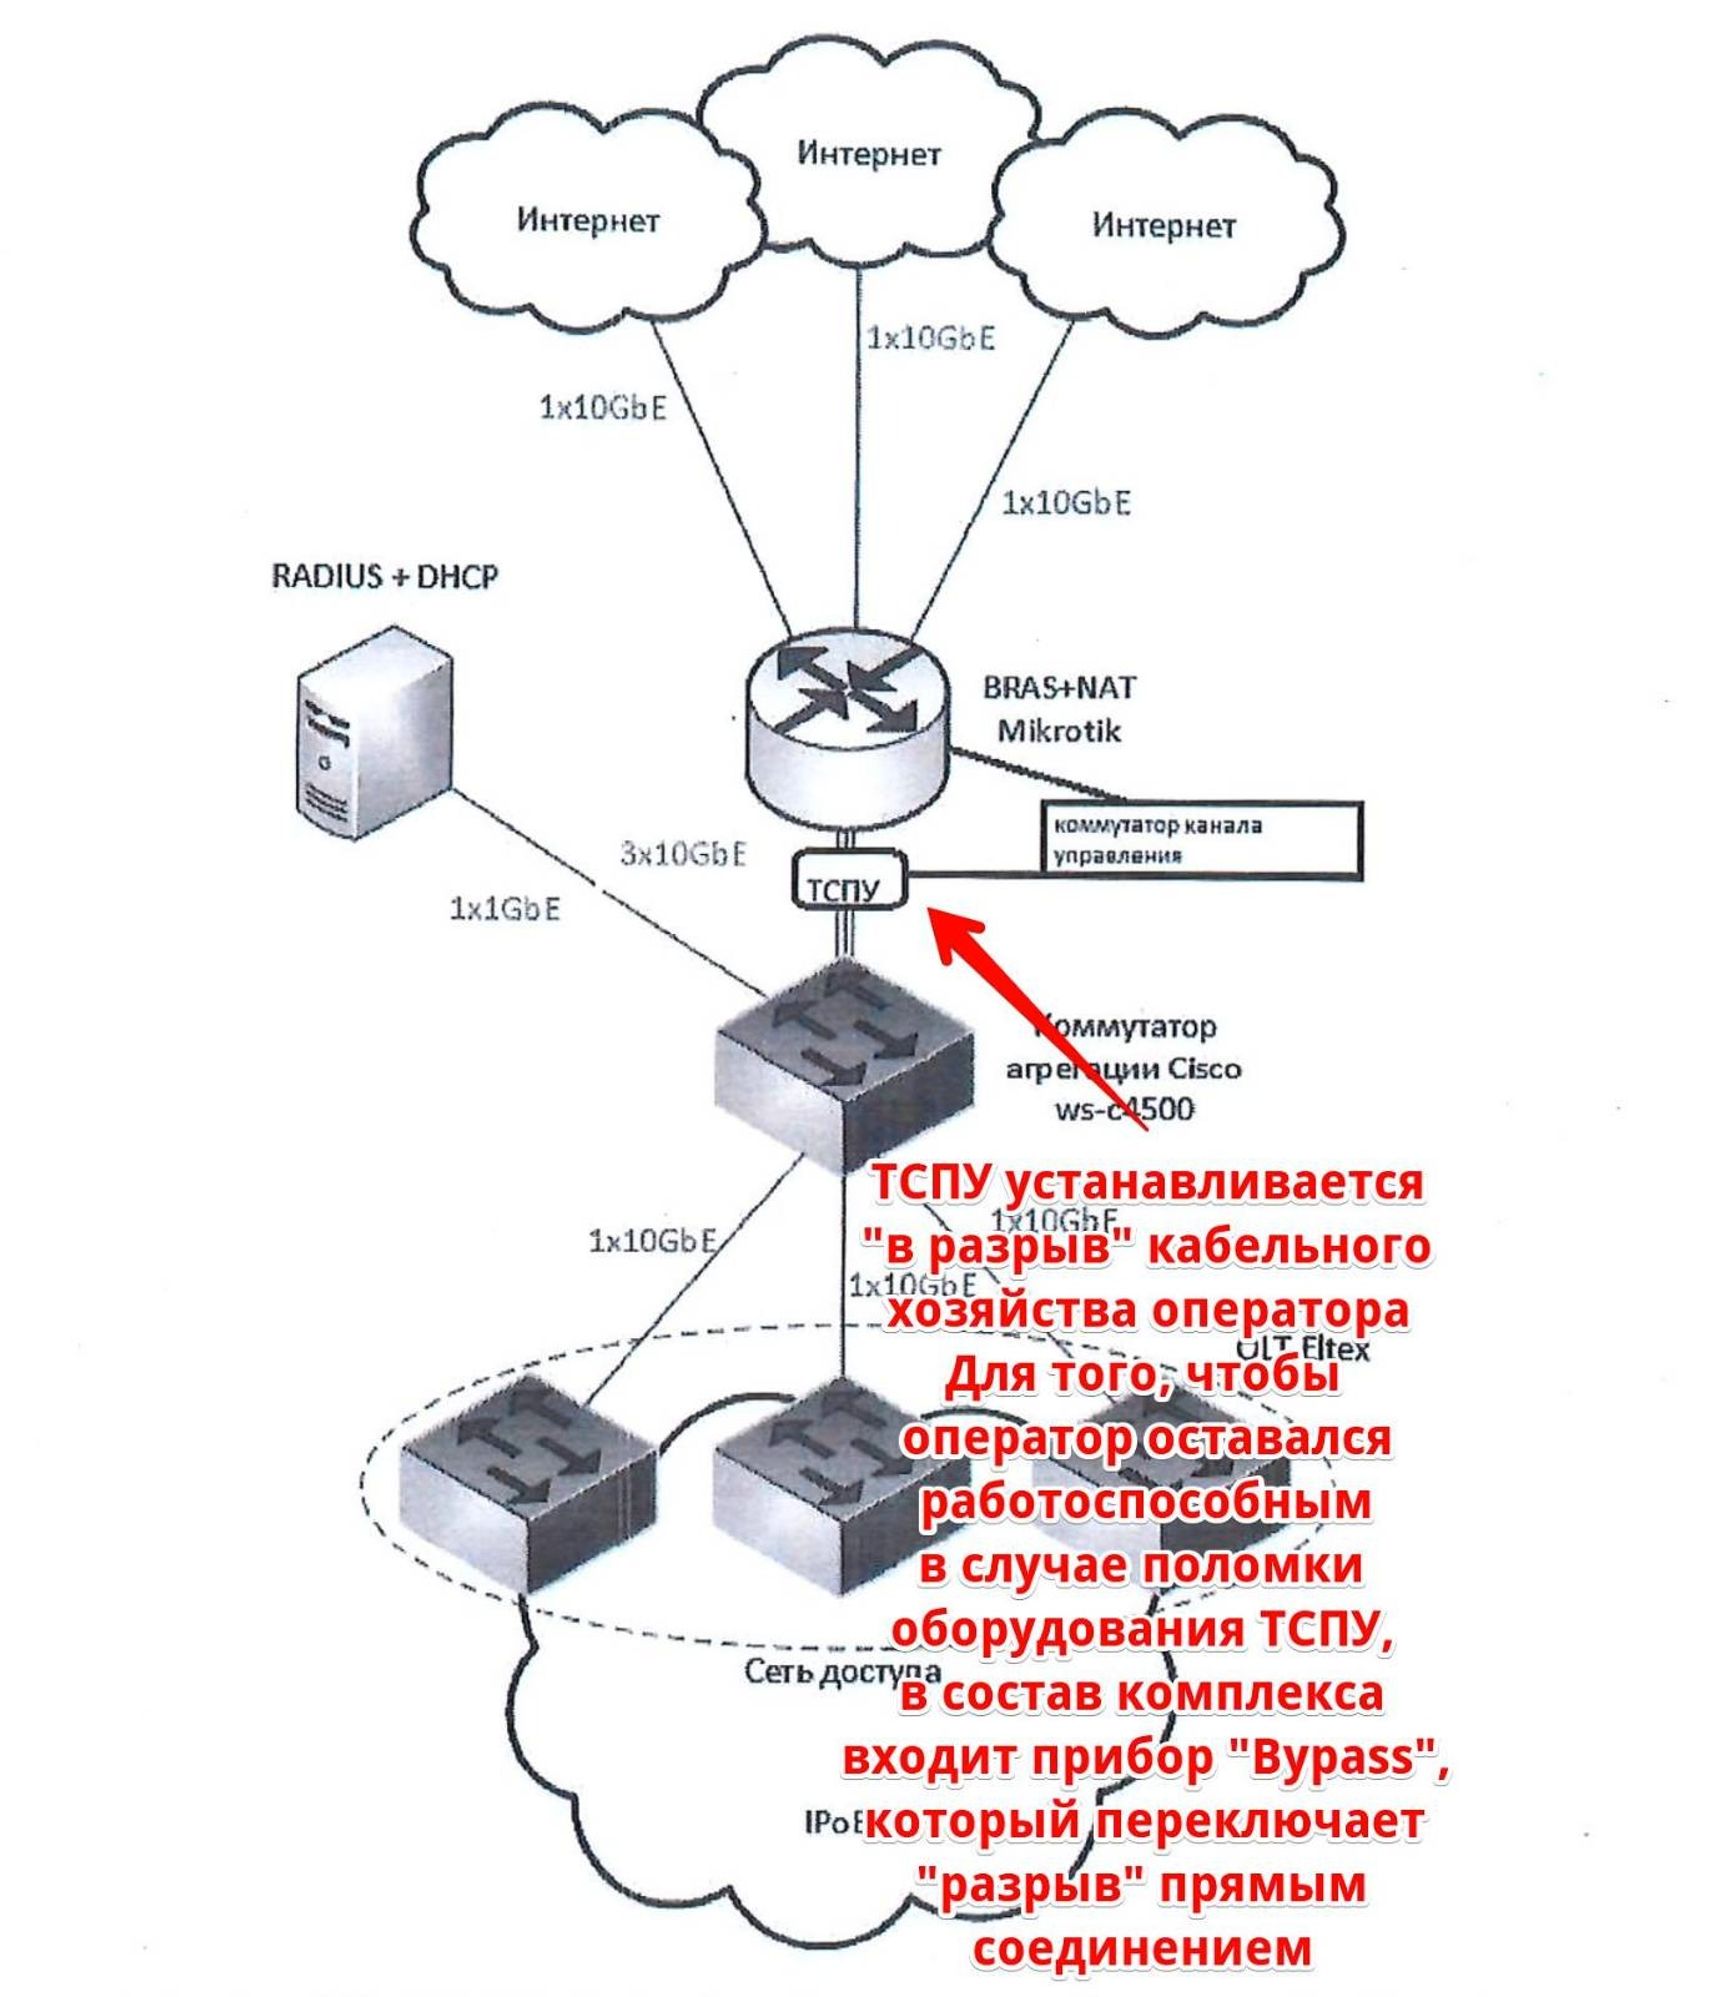 Схема установки ТСПУ из рабочей документации технико-технологического решения одного из операторов связи